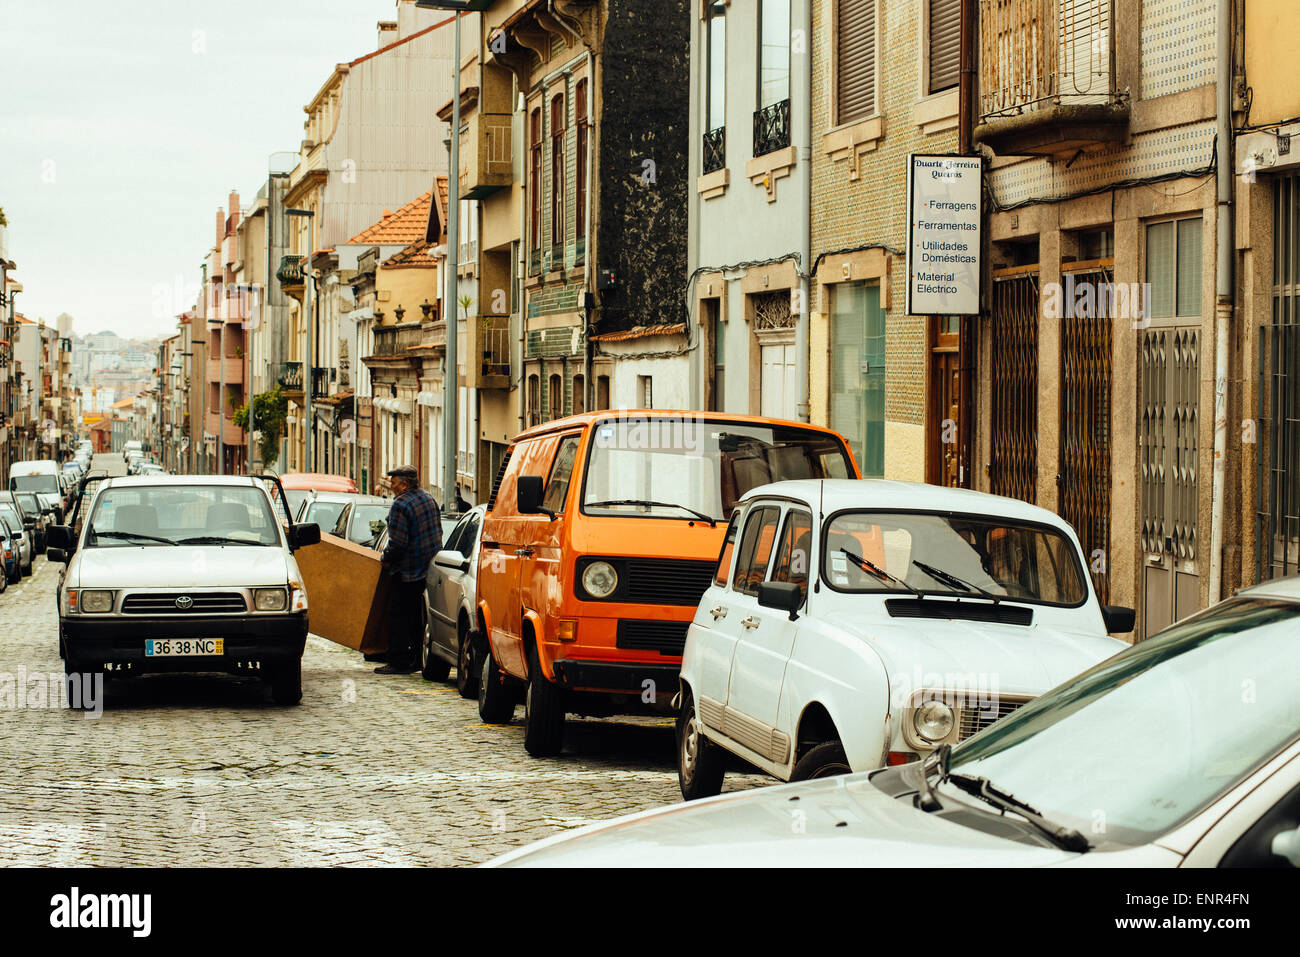 Street life in Porto, Portugal Stock Photo